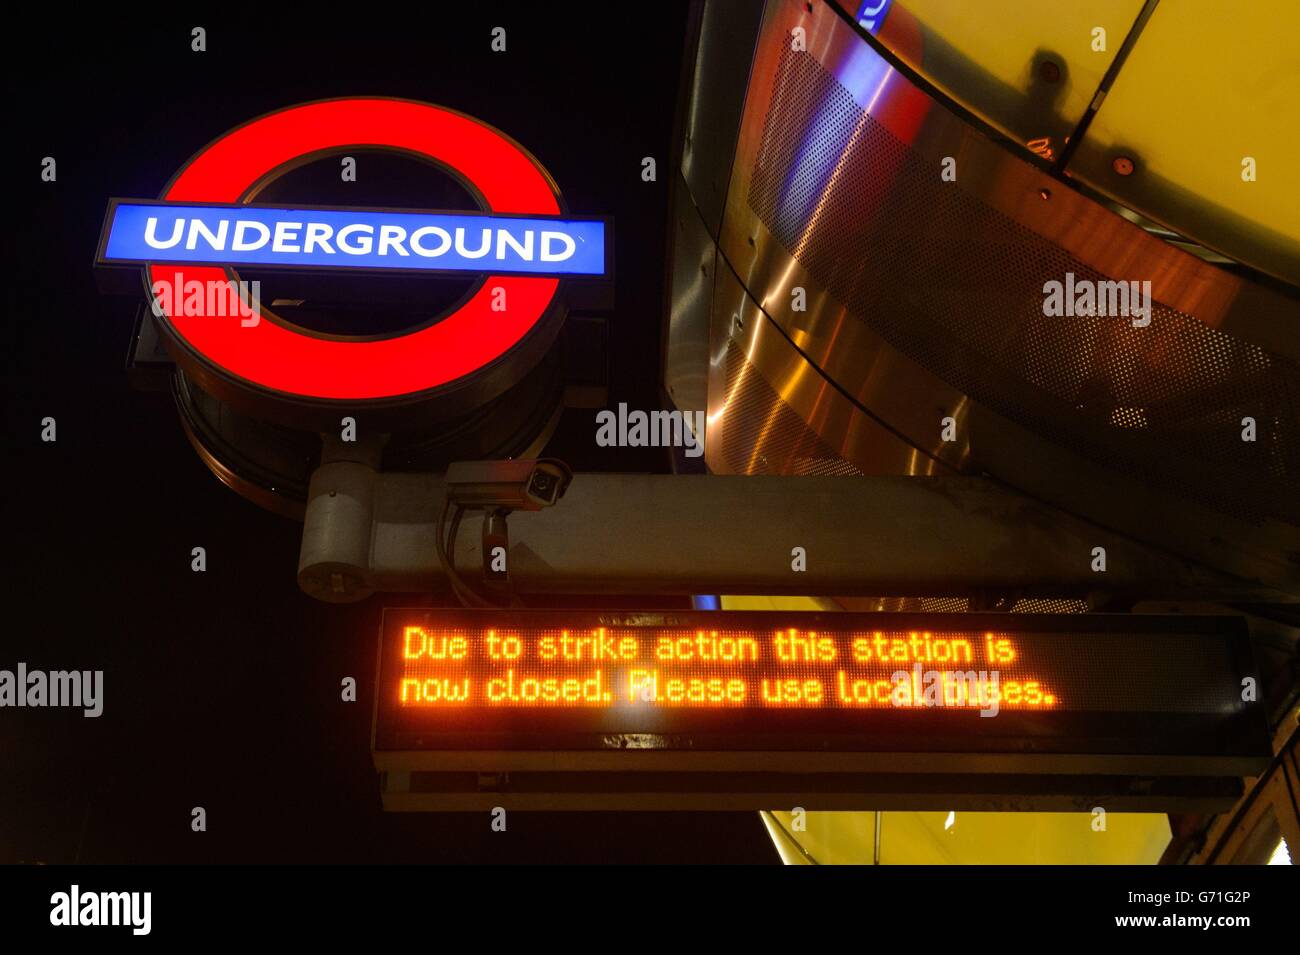 Un cartello elettronico presso la stazione della metropolitana Southwark, nel centro di Londra, che dà notizia dell'inizio di 48 ore di azione industriale da parte dei membri del sindacato RMT che colpiscono la metropolitana di Londra in una fila sopra la chiusura delle biglietterie. Foto Stock